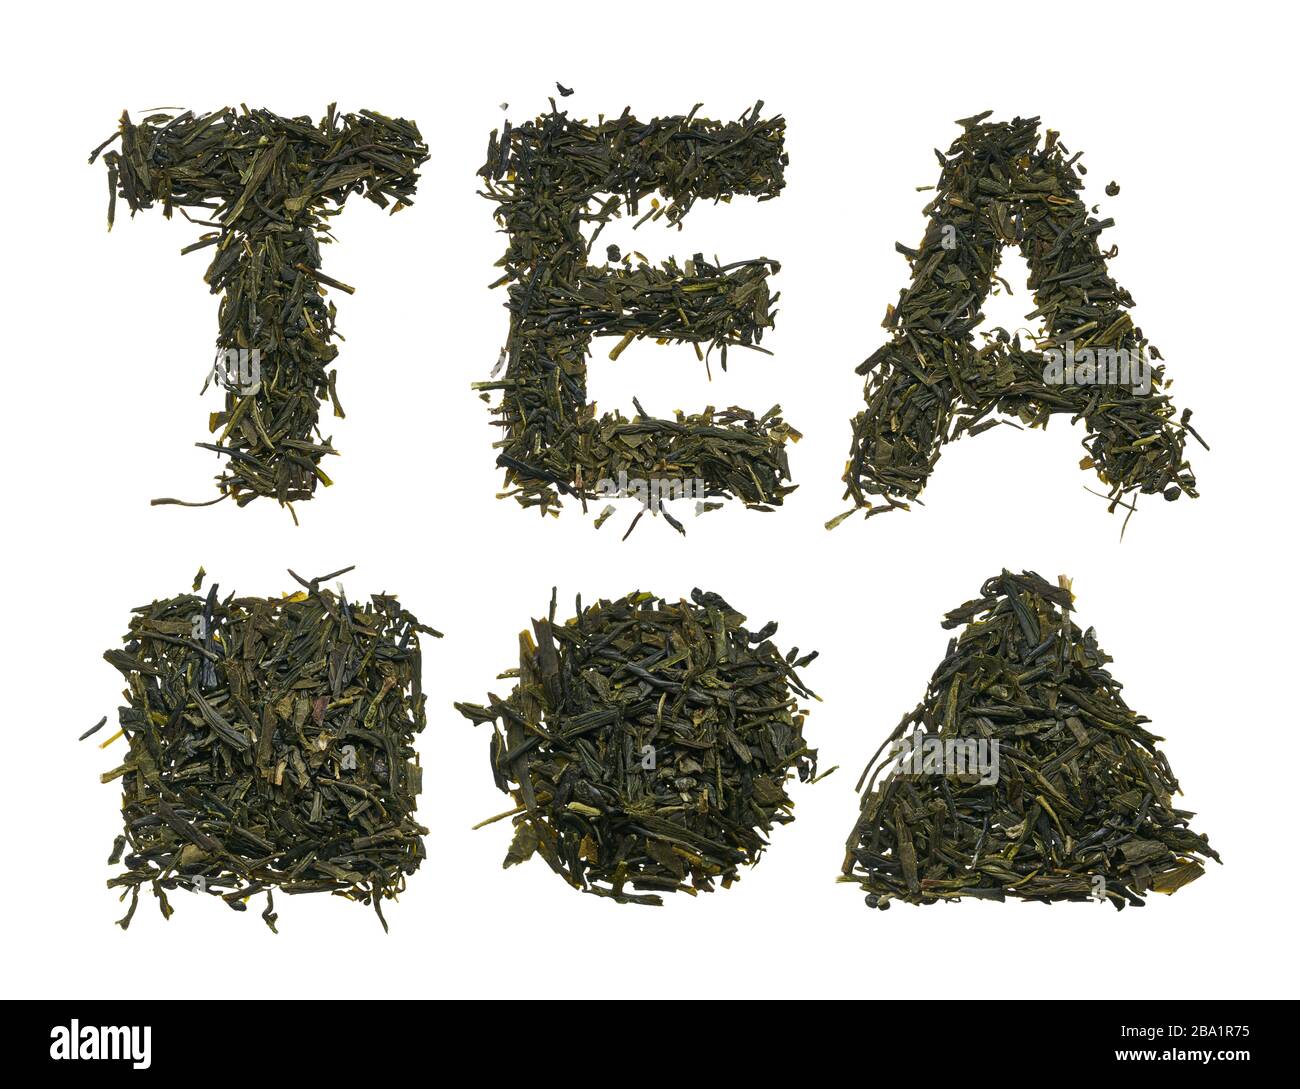 Le pochoir est fait de thé de différentes variétés. Carré, cercle et triangle en herbe sèche. Banque D'Images